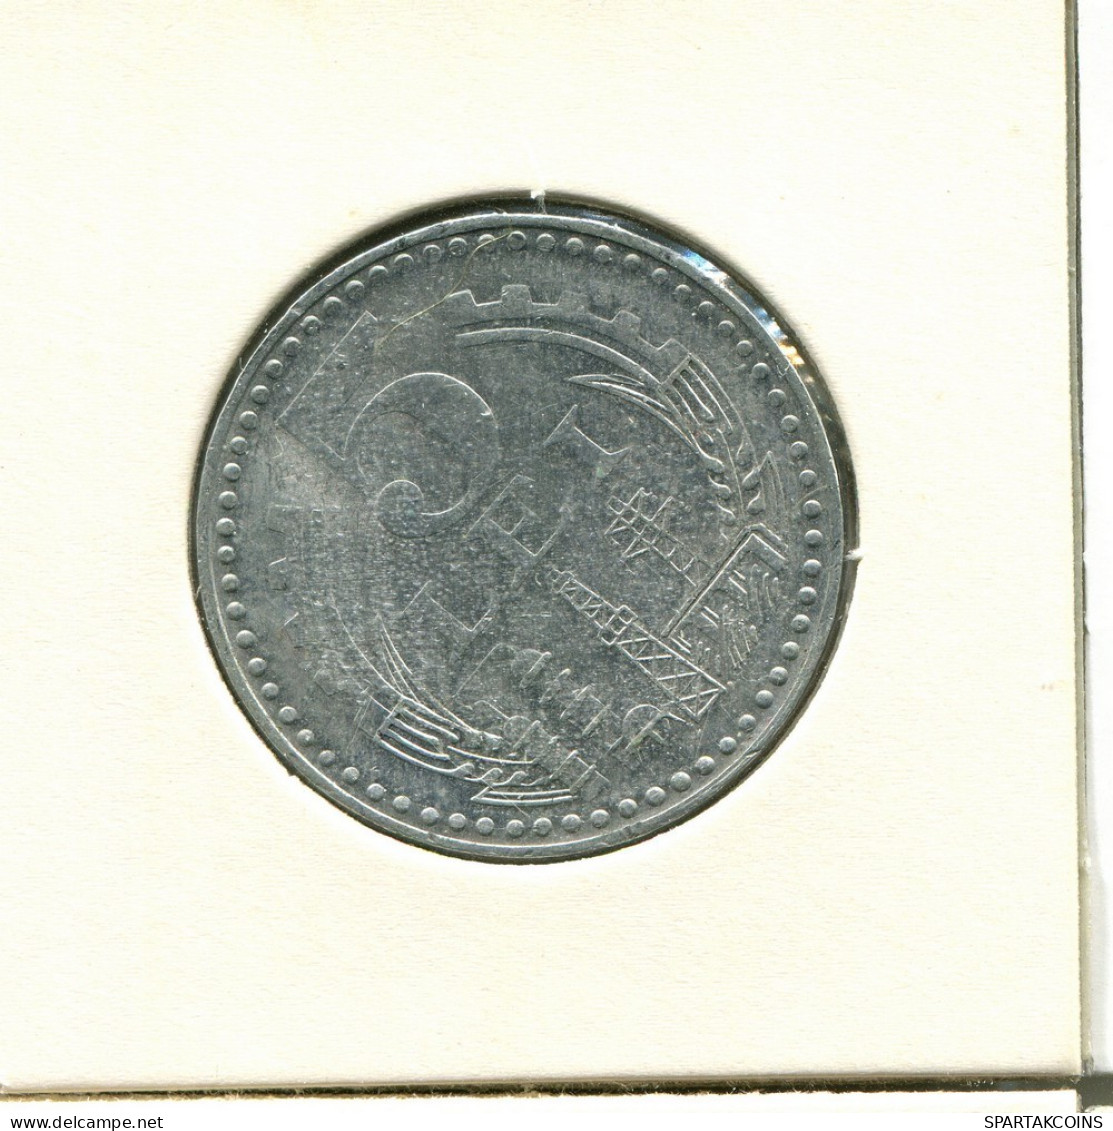 5 LEI 1978 ROMANIA Coin #AV104.U.A - Rumänien